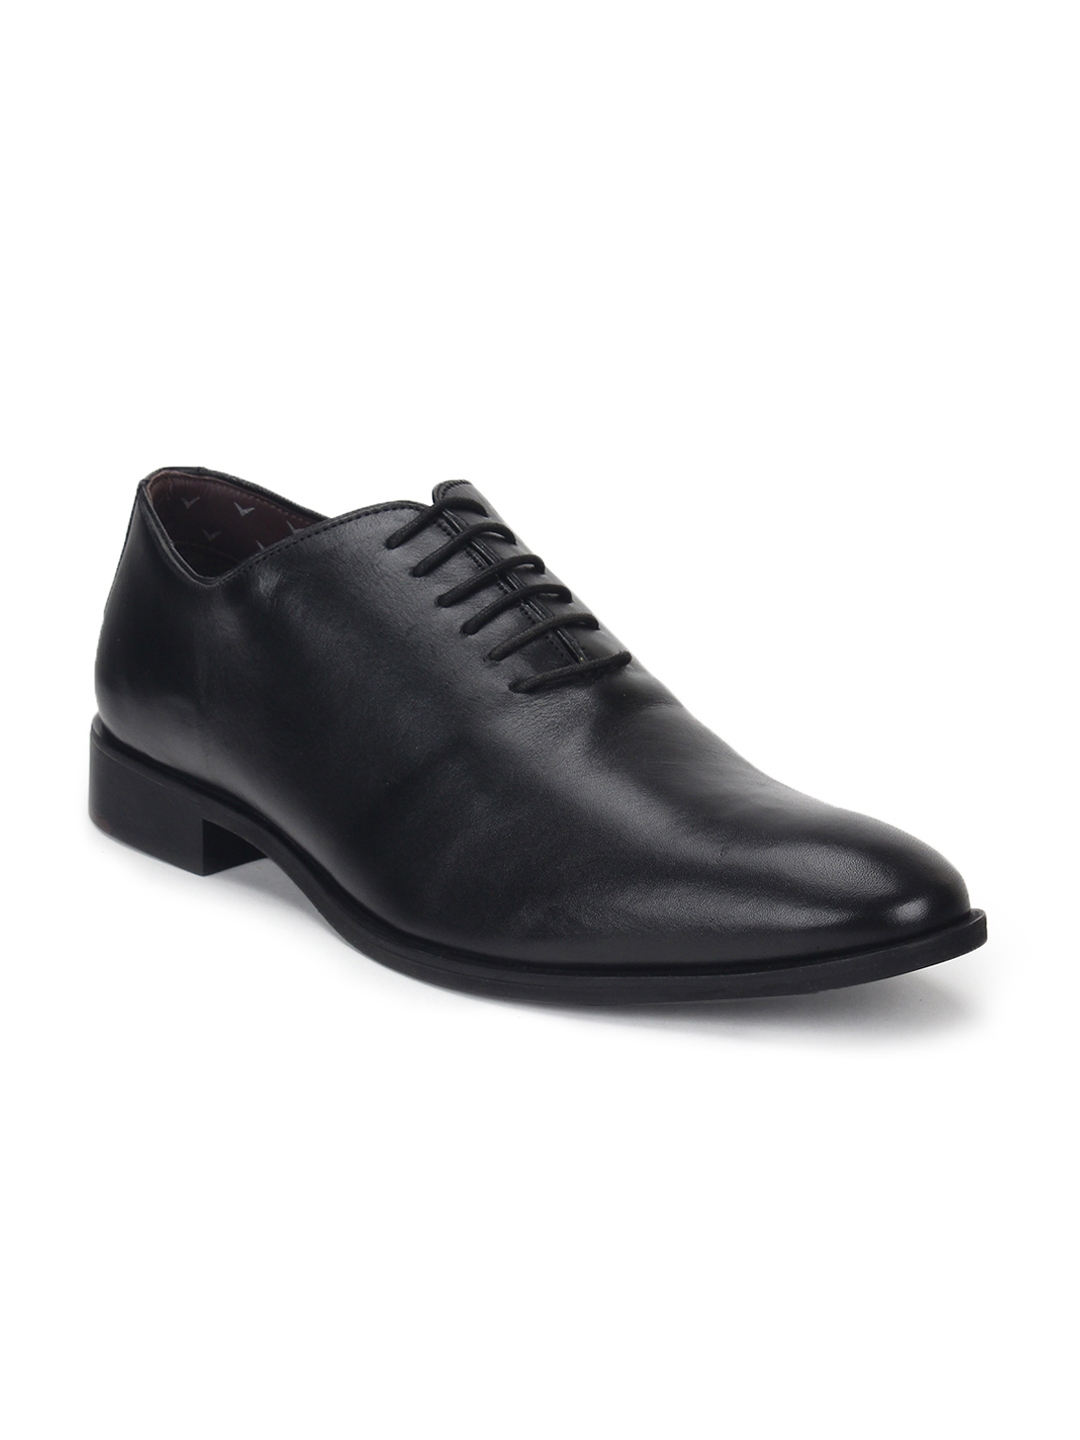 Buy Blackberrys Black Leather Formal Shoes - Formal Shoes for Men ...